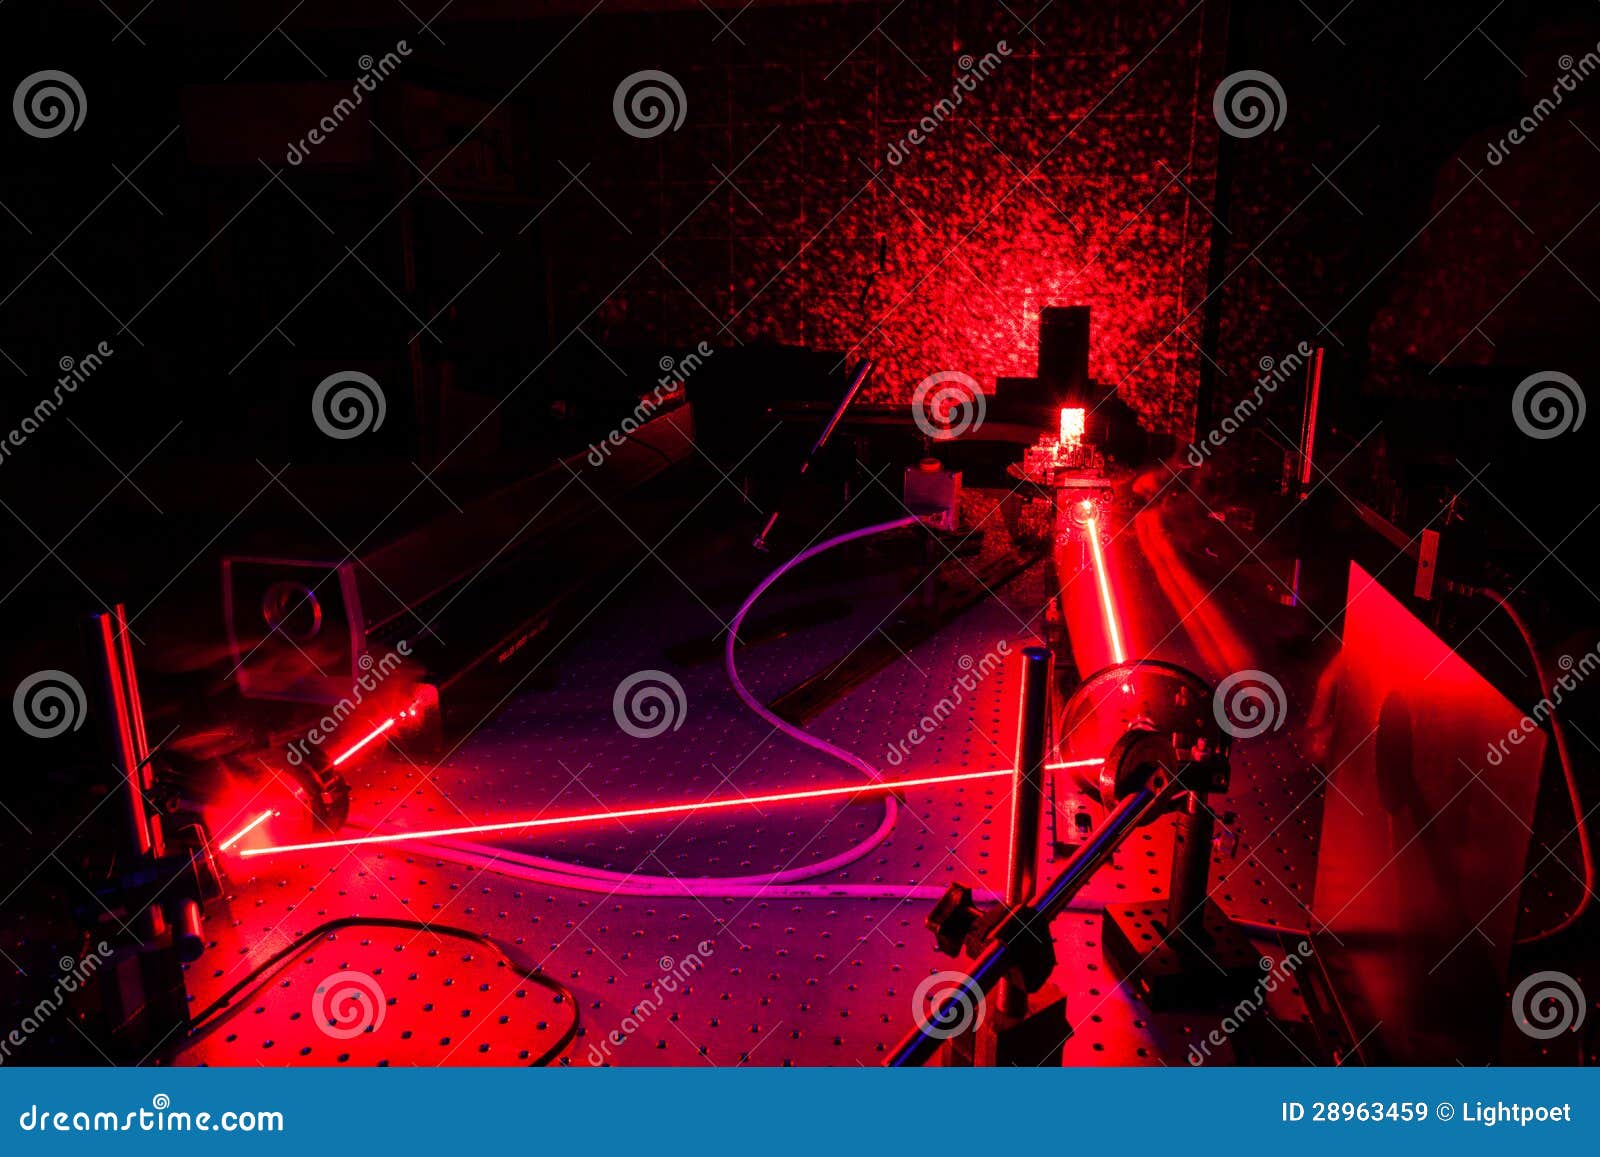 lasers in a quantum optics lab